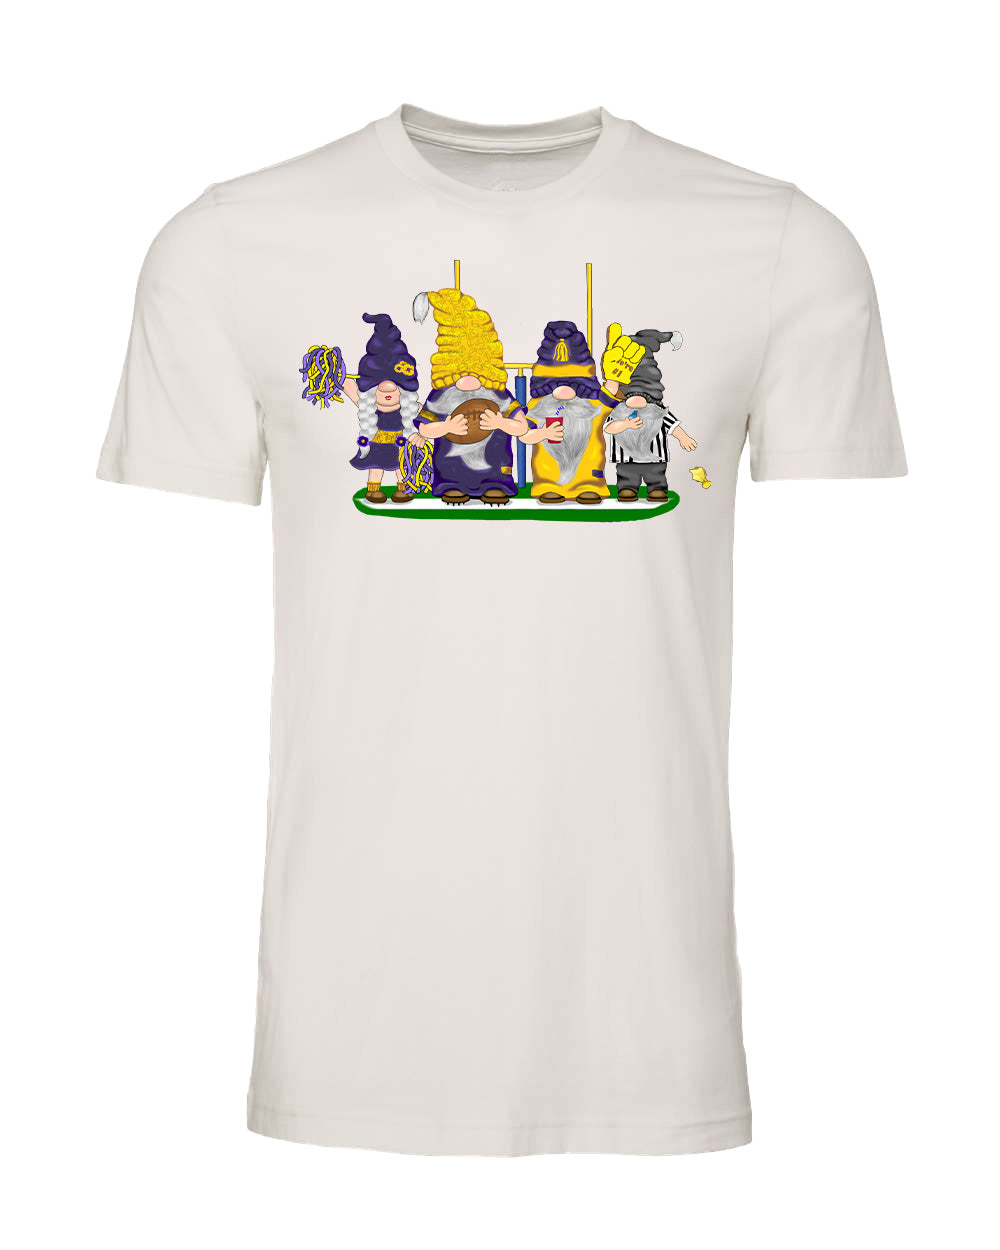 Purple & Gold Football Gnomes on Men's T-shirt (similar to Minnesota)